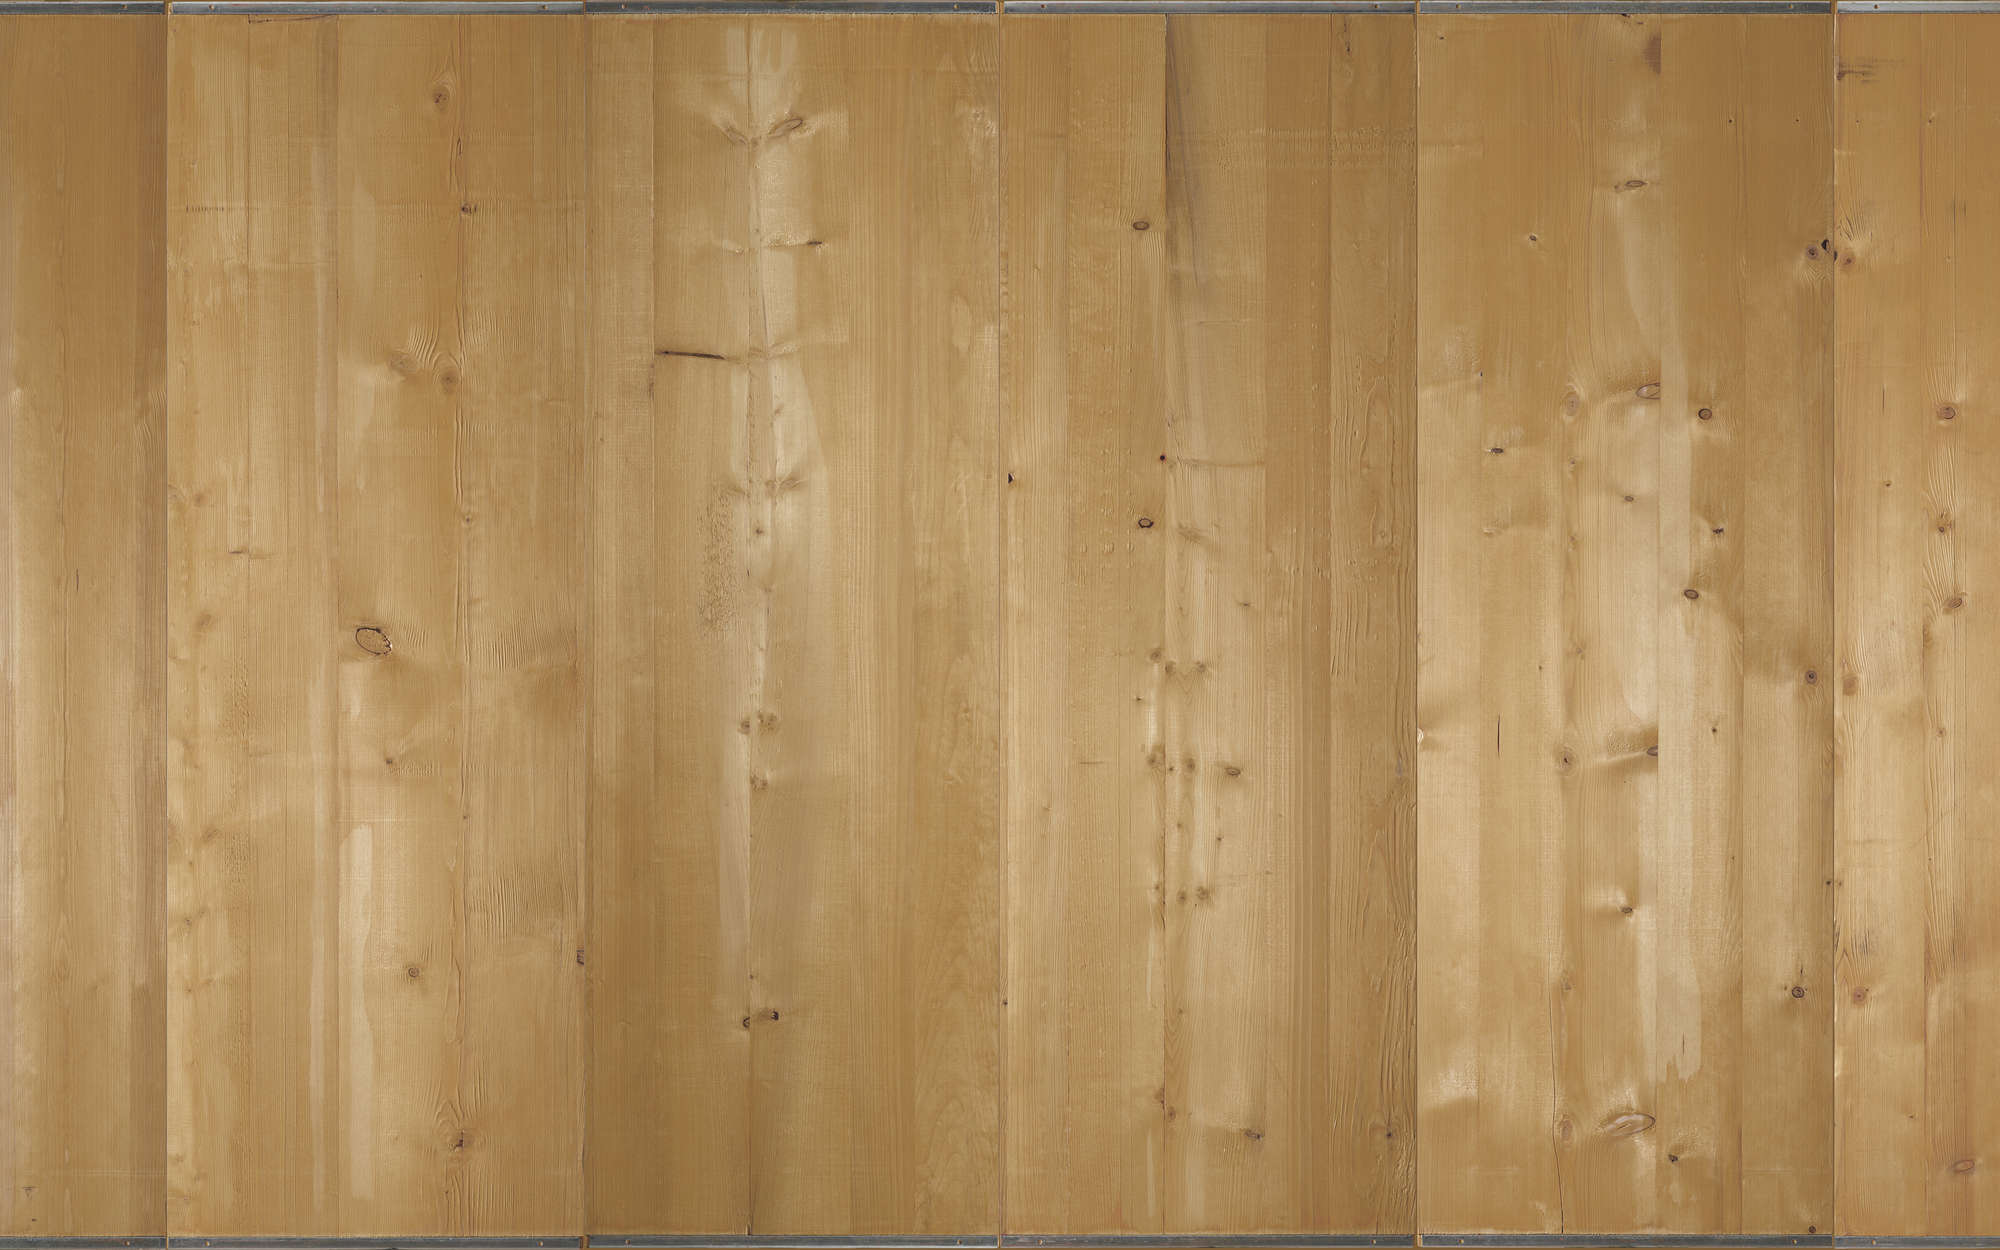             Digital behang licht houten planken - Mat glad vlies
        